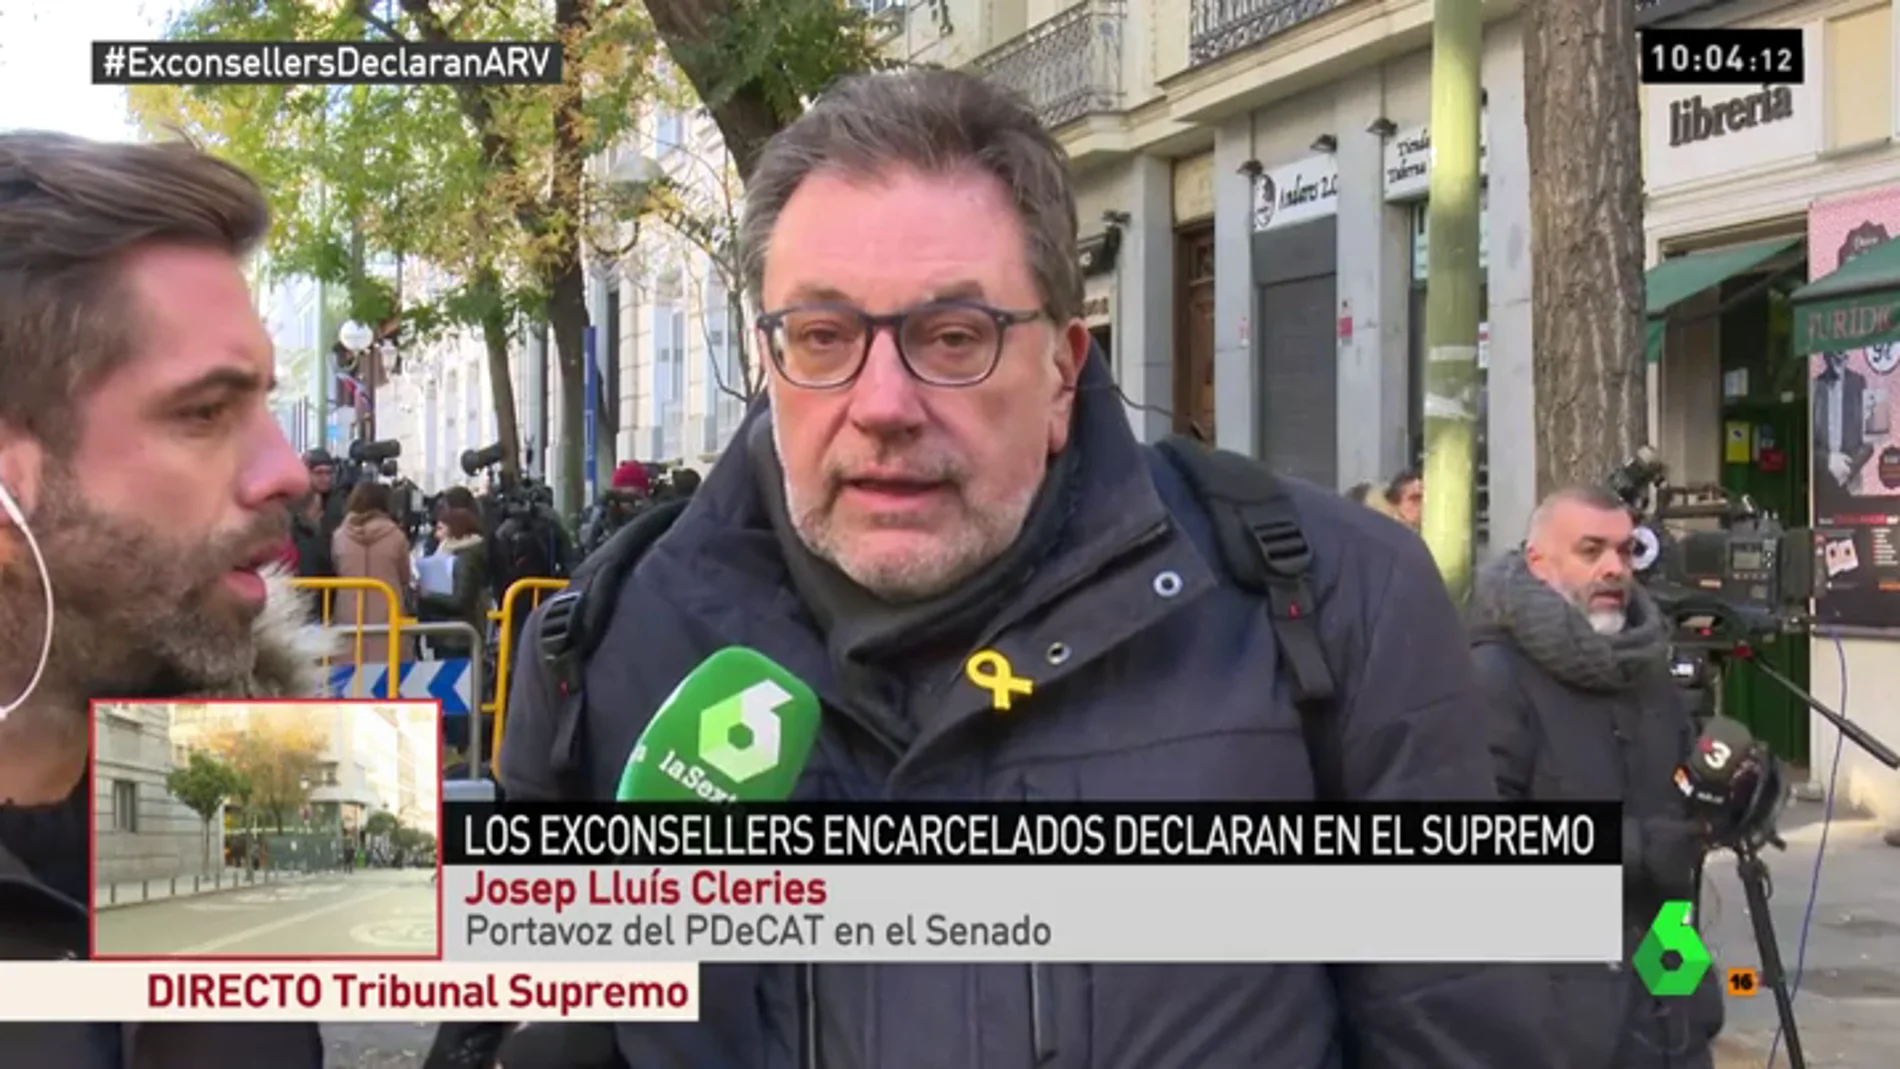 Josep Lluis Clèries: "Cuando era joven pedíamos libertad, amnistía y estatut de autonomía y hoy incluso hemos de pedir poder lucir un lazo amarillo, que triste"